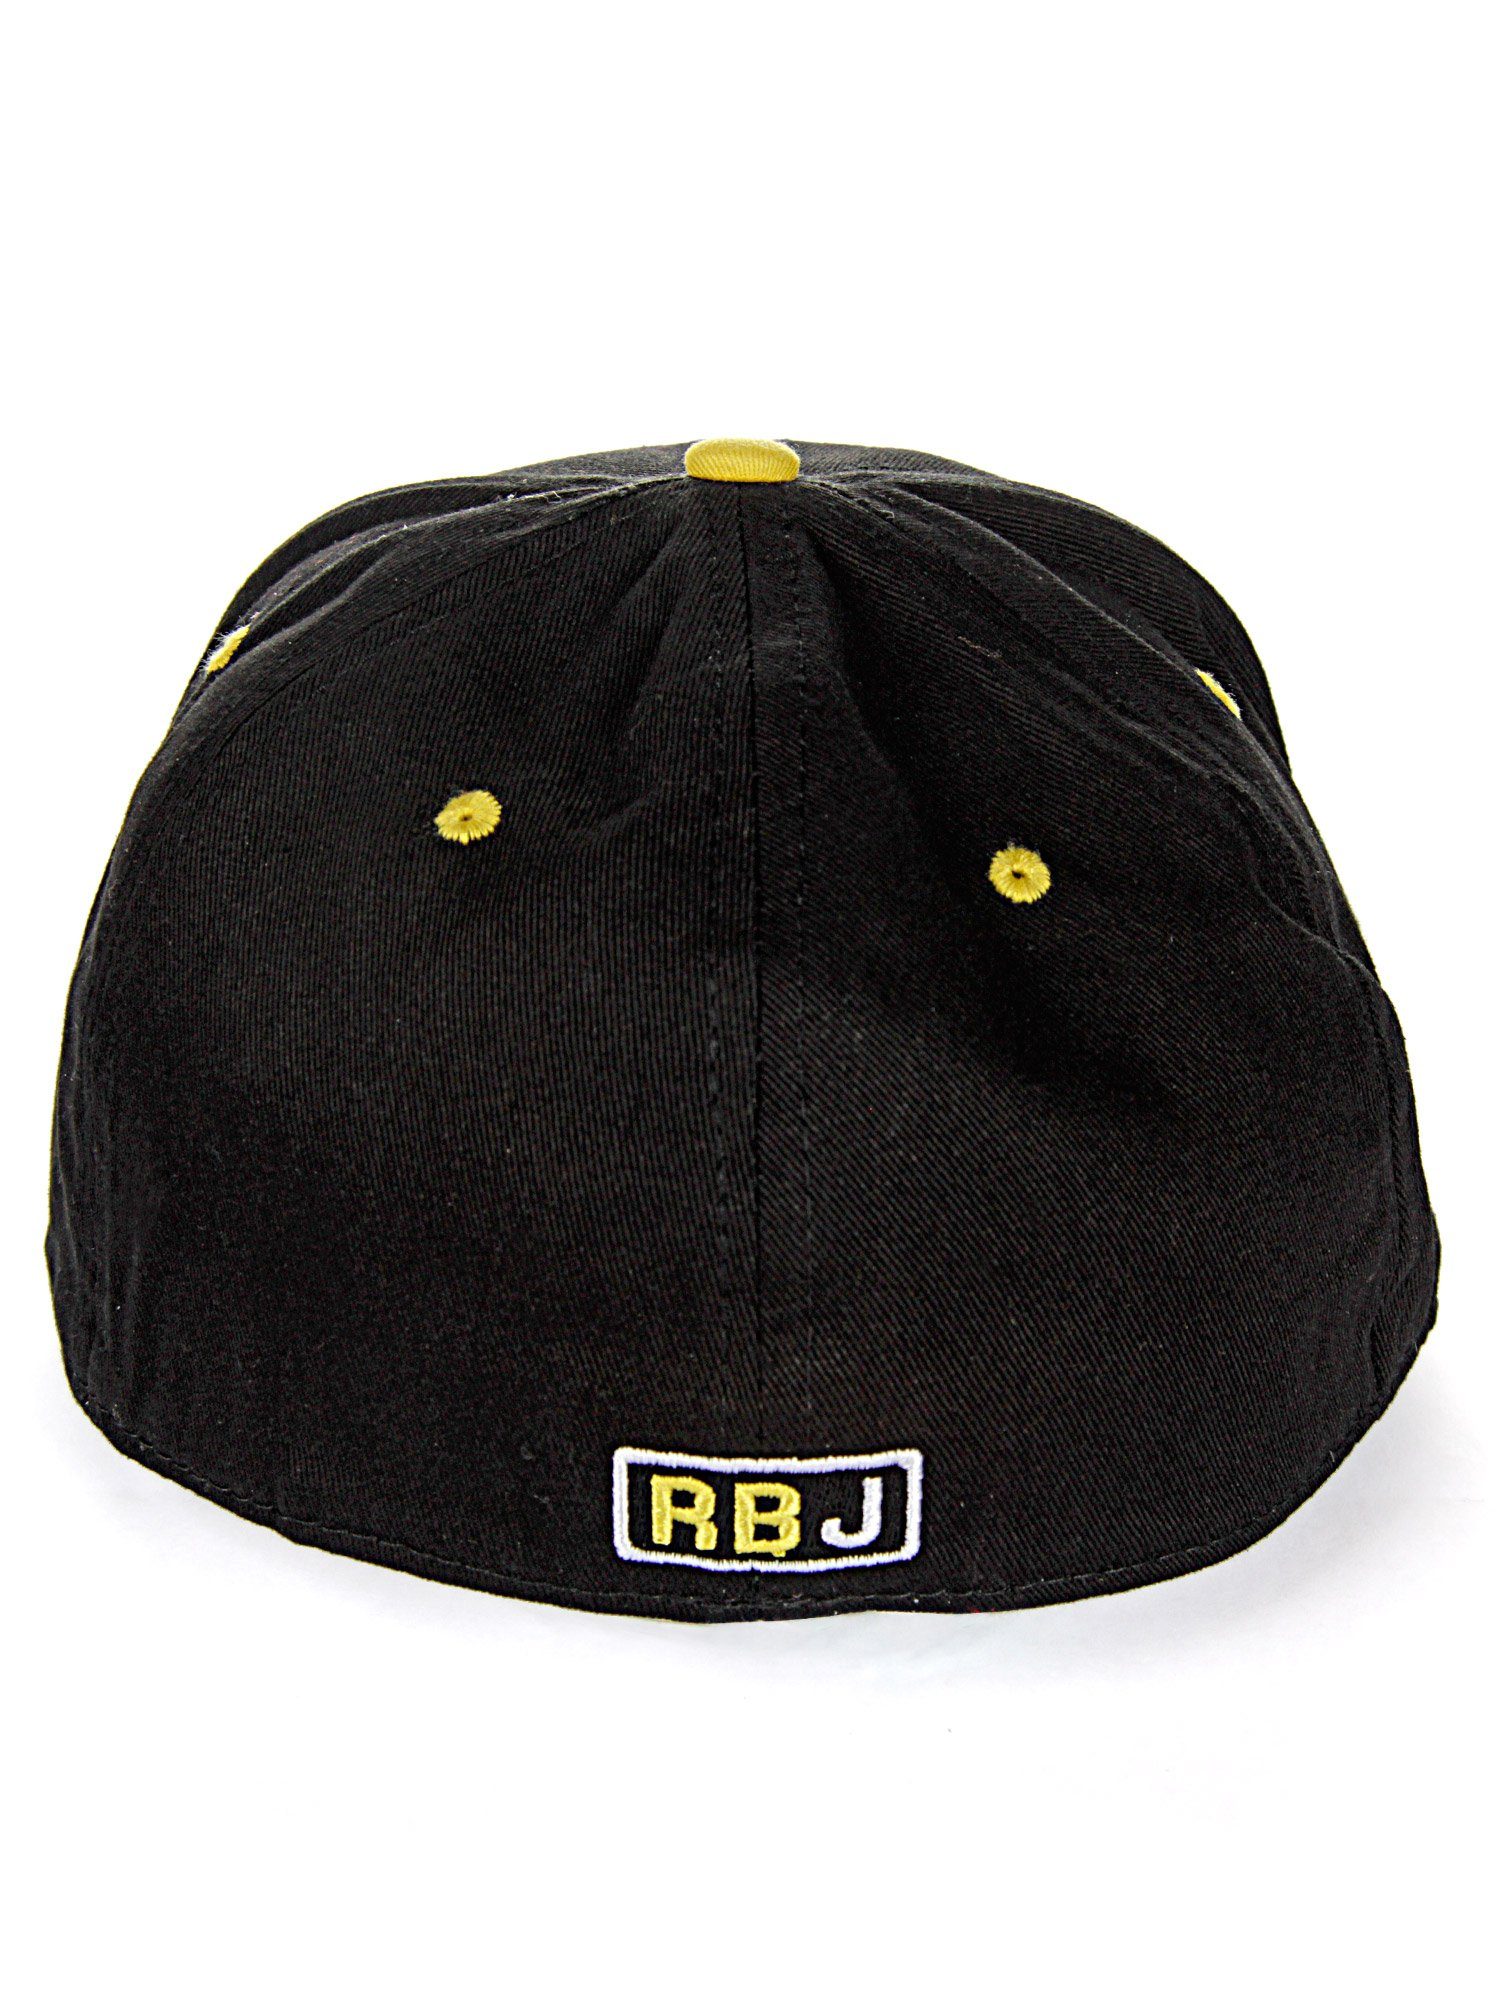 Cap Baseball RedBridge Durham kontrastfarbigem schwarz-gelb mit Schirm